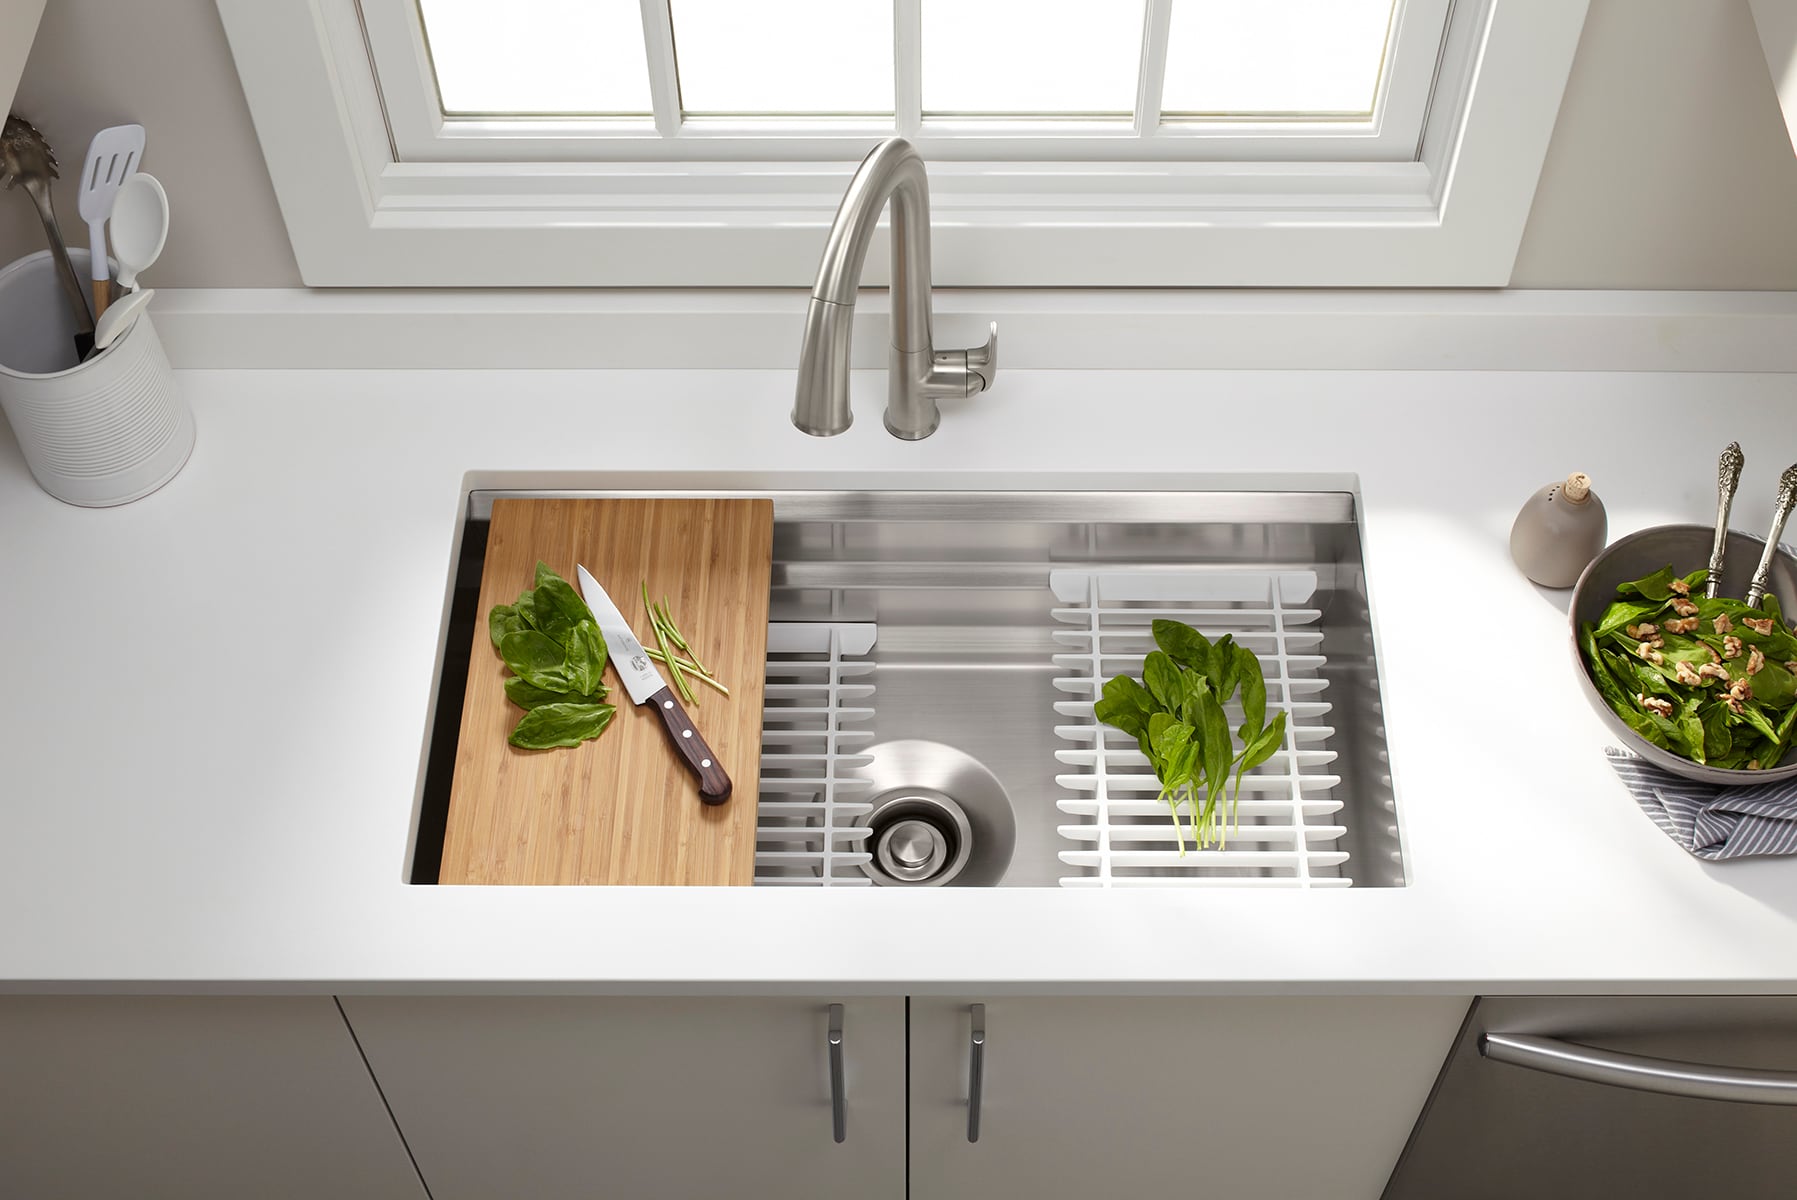 Kohler K-5290-HCF-NA Undertone Preserve 31-1/4 Undermount Single-Bowl Kitchen Sink